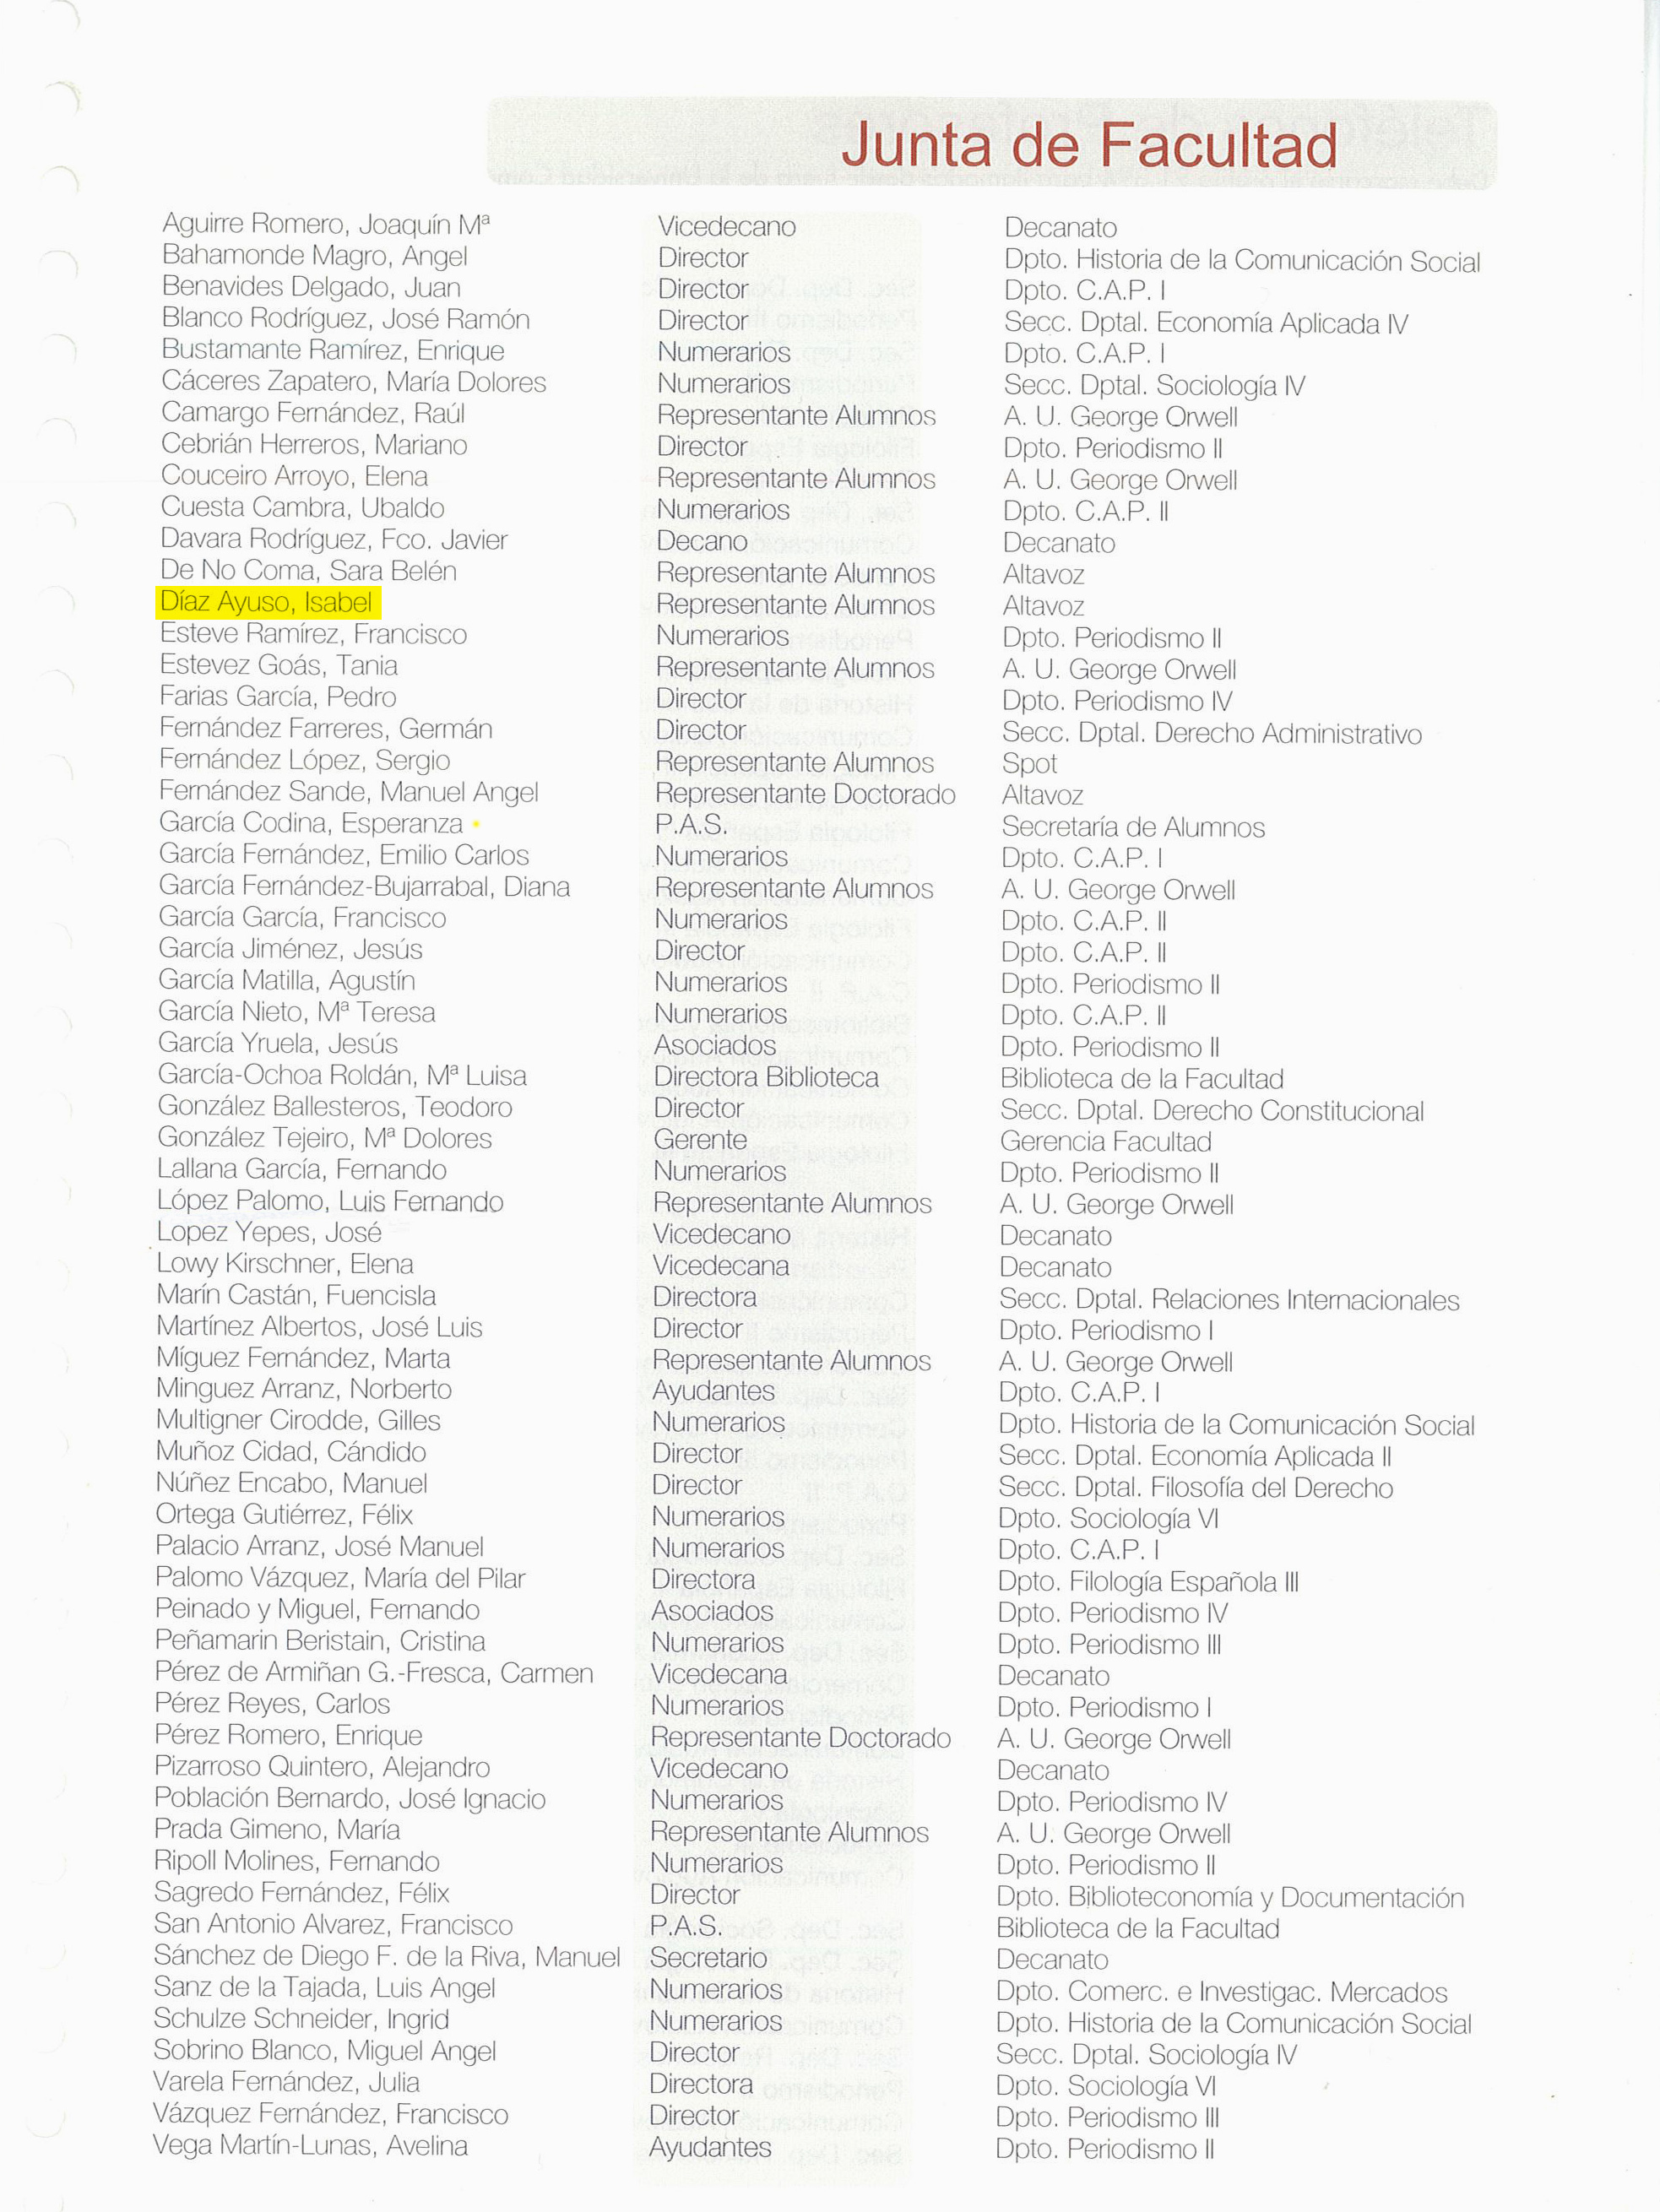 Listado oficial de la Junta de Facultad curso 1999-2000, con Ayuso como representante de alumnos.